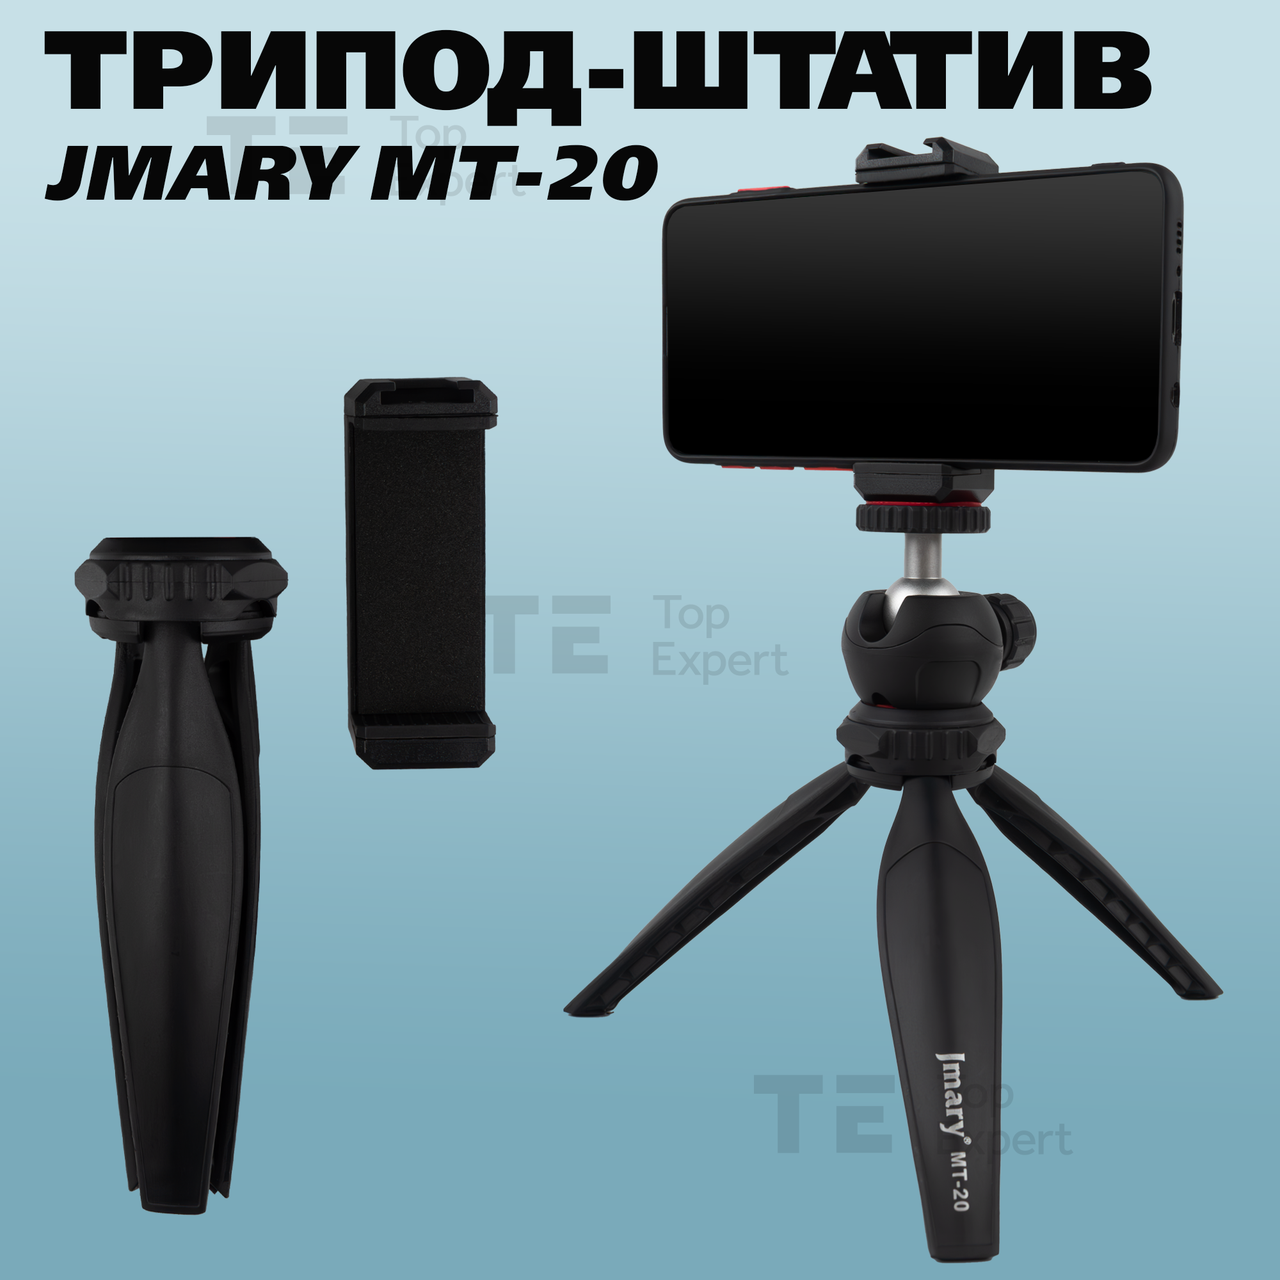 Мініштатив трипод Jmary MT-20 для телефона, камери, кільцевої лампи.